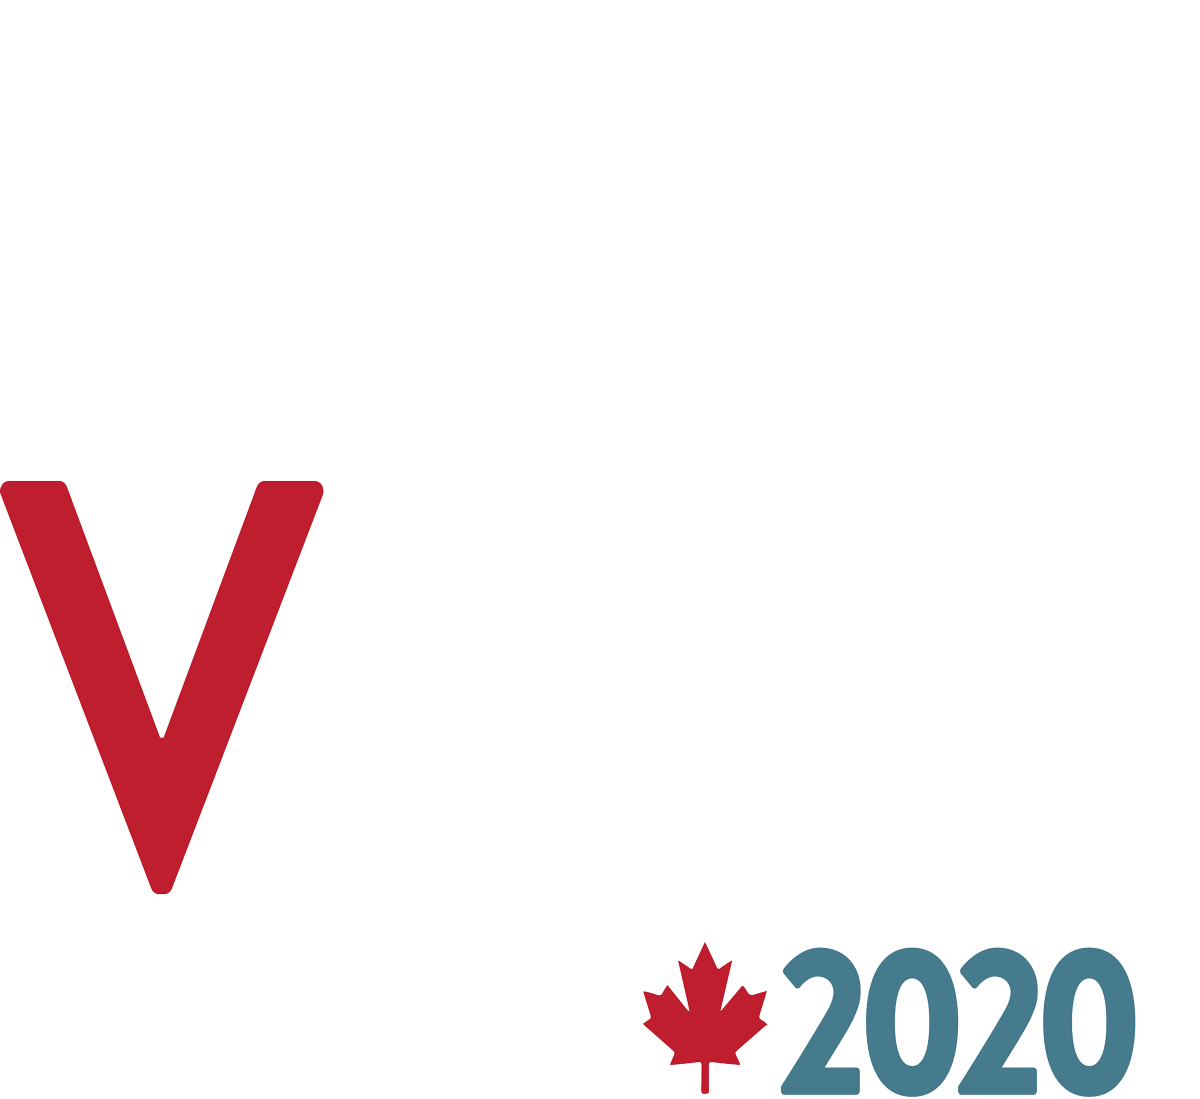 VSSW Fernie 2020